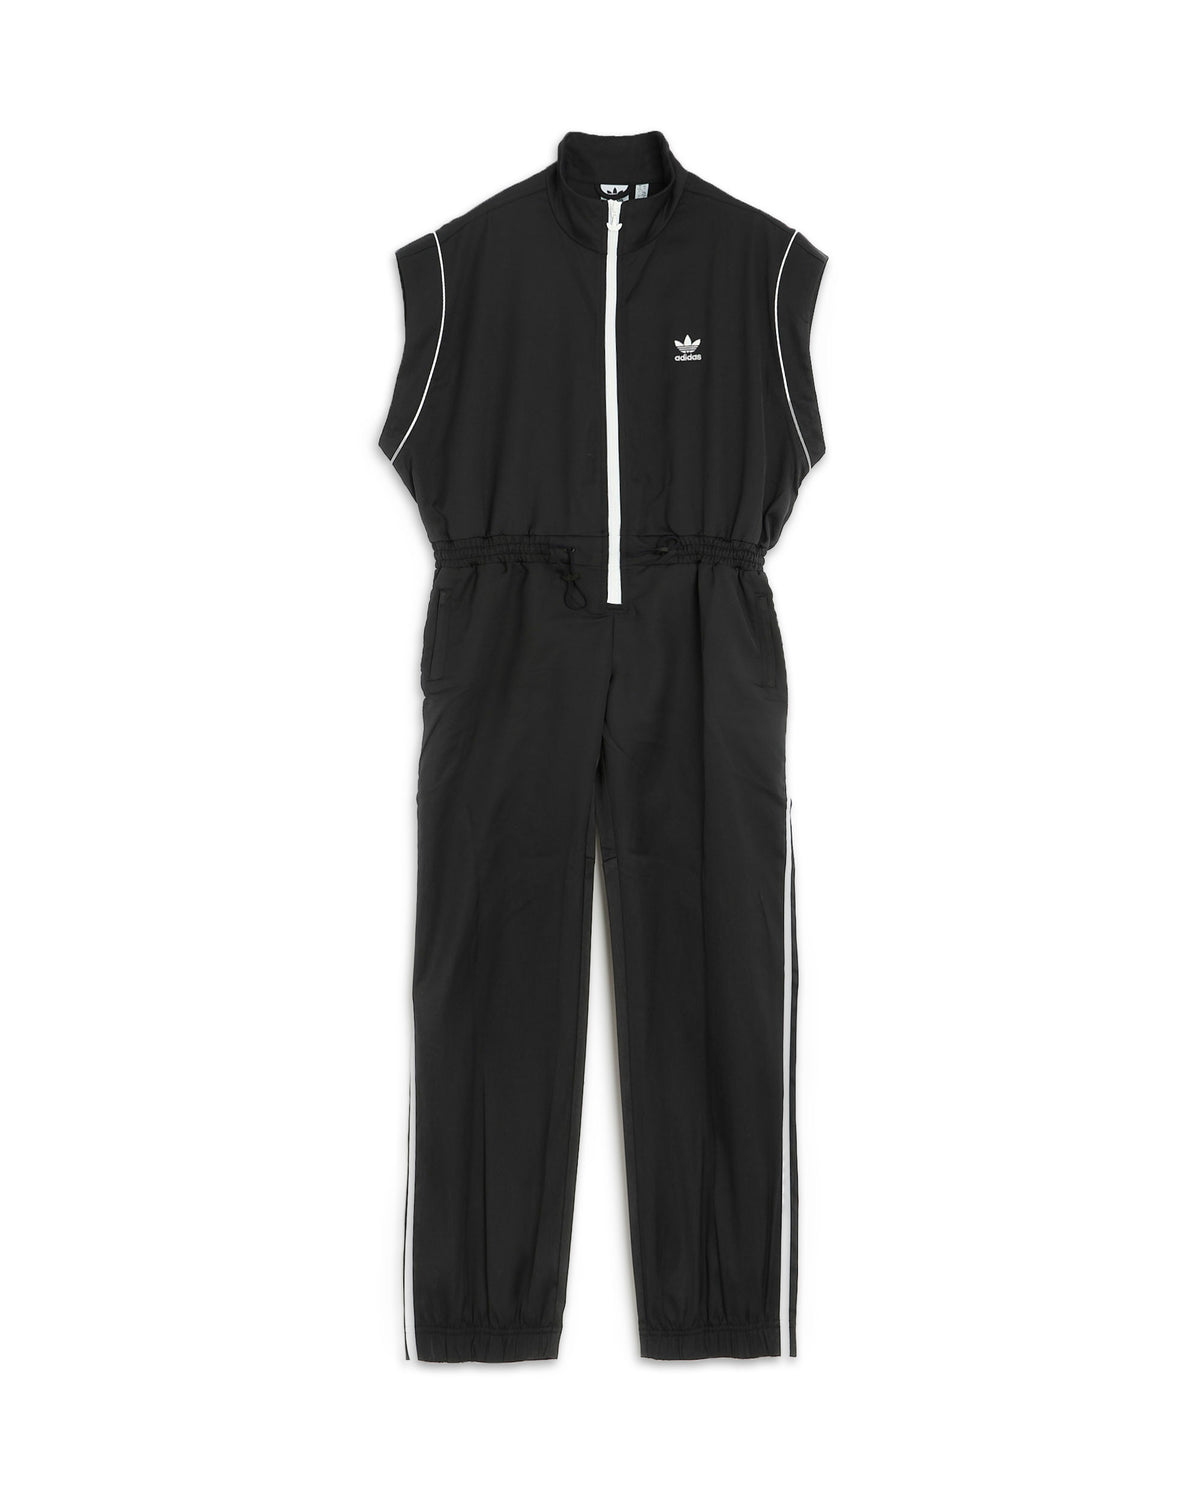 Adidas Originals Jump Suit Black